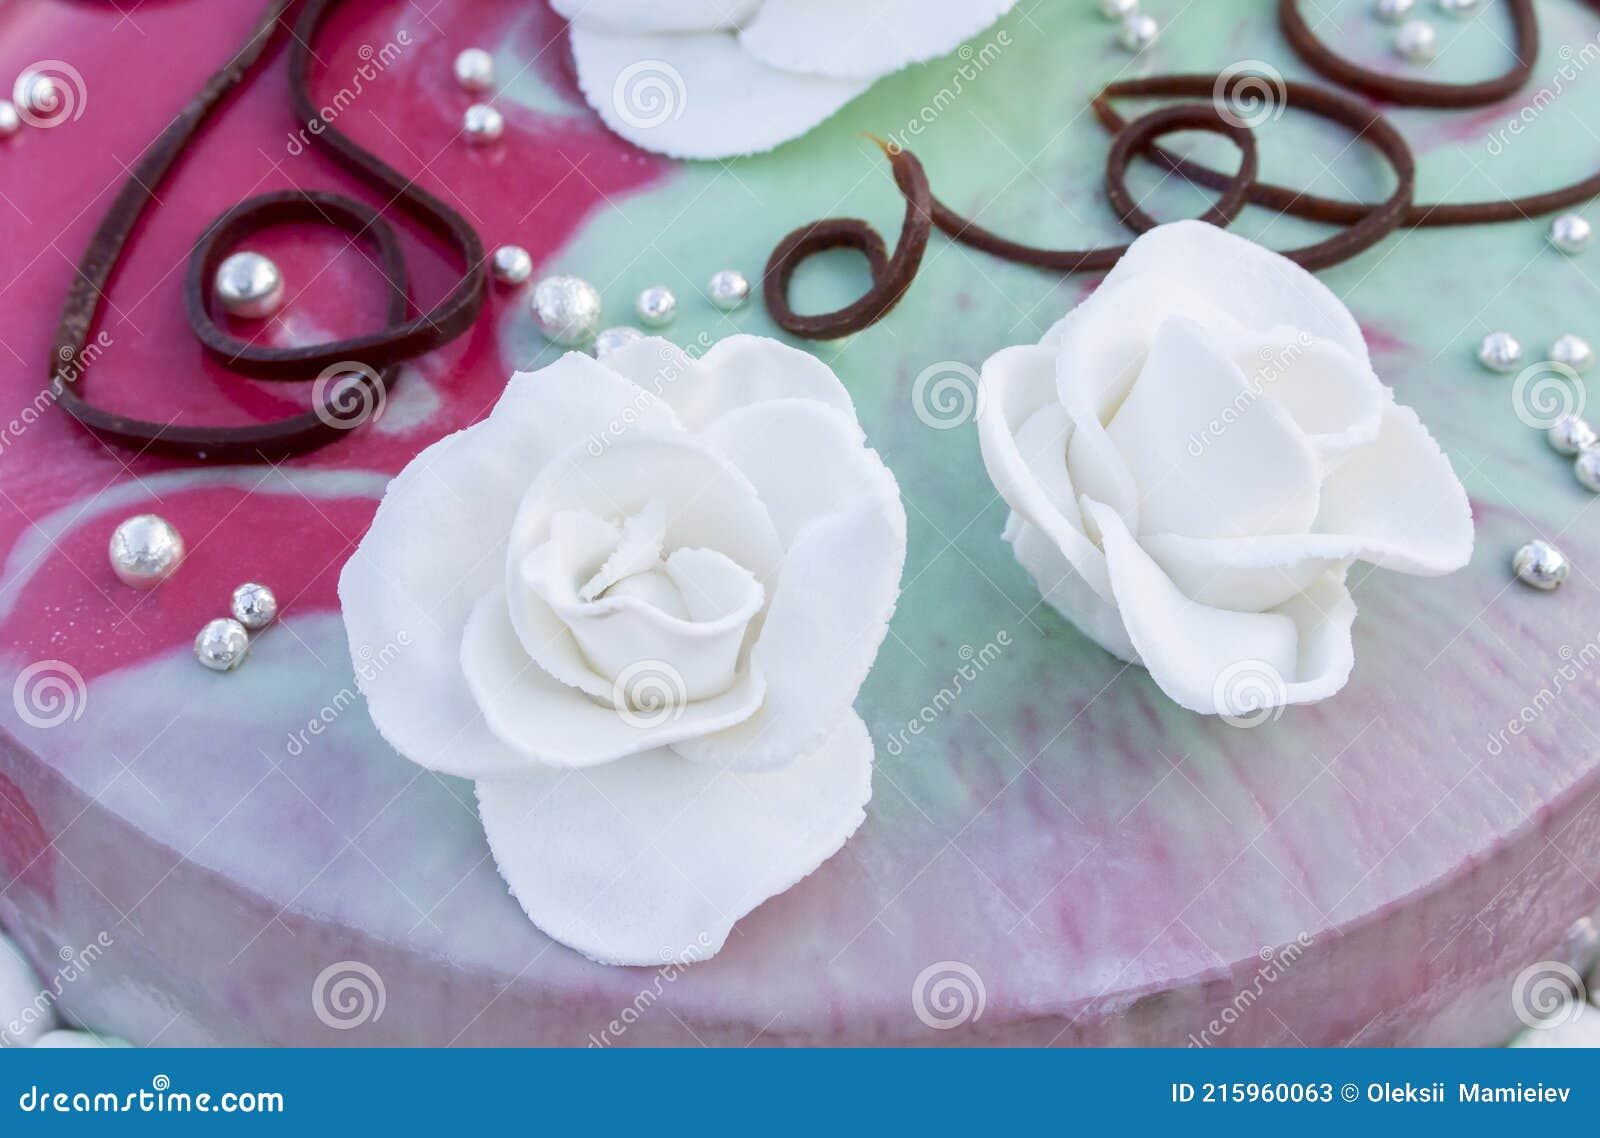 Rosas Blancas De La Guinda Del Pastel De Bodas Sobre El Fondo De Chocolate  Y Glaseado De Color Verde Imagen de archivo - Imagen de adorne, hermoso:  215960063